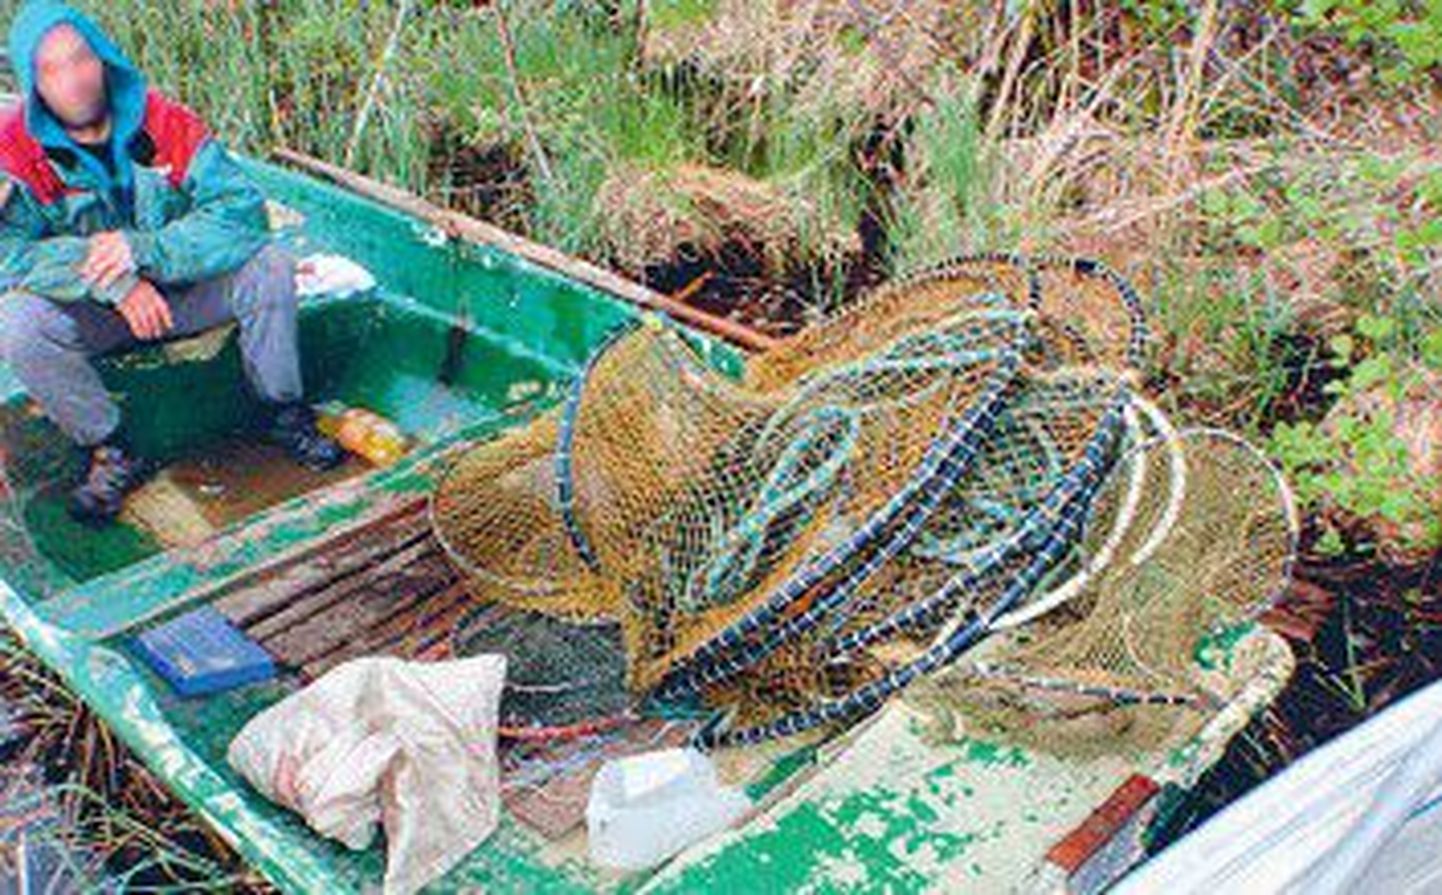 У задержанного на озере Саадъярв браконьера в лодке была мережа, которая не является орудием любительского лова. Использовать ее могут только профессиональные рыбаки.